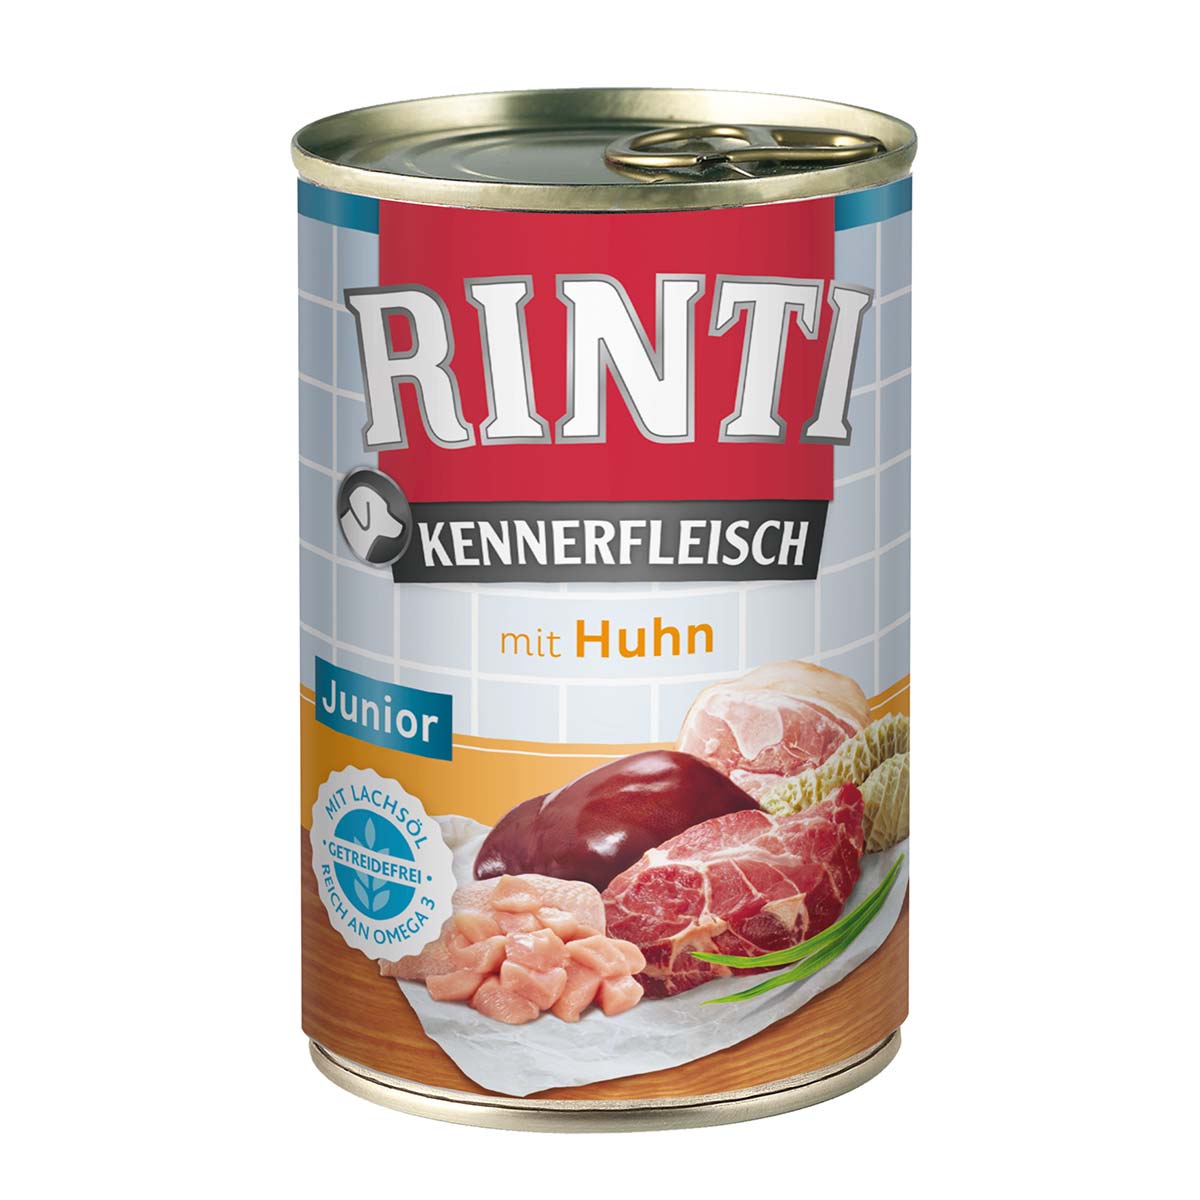 Rinti Kennerfleisch Junior mit Huhn 24x400g